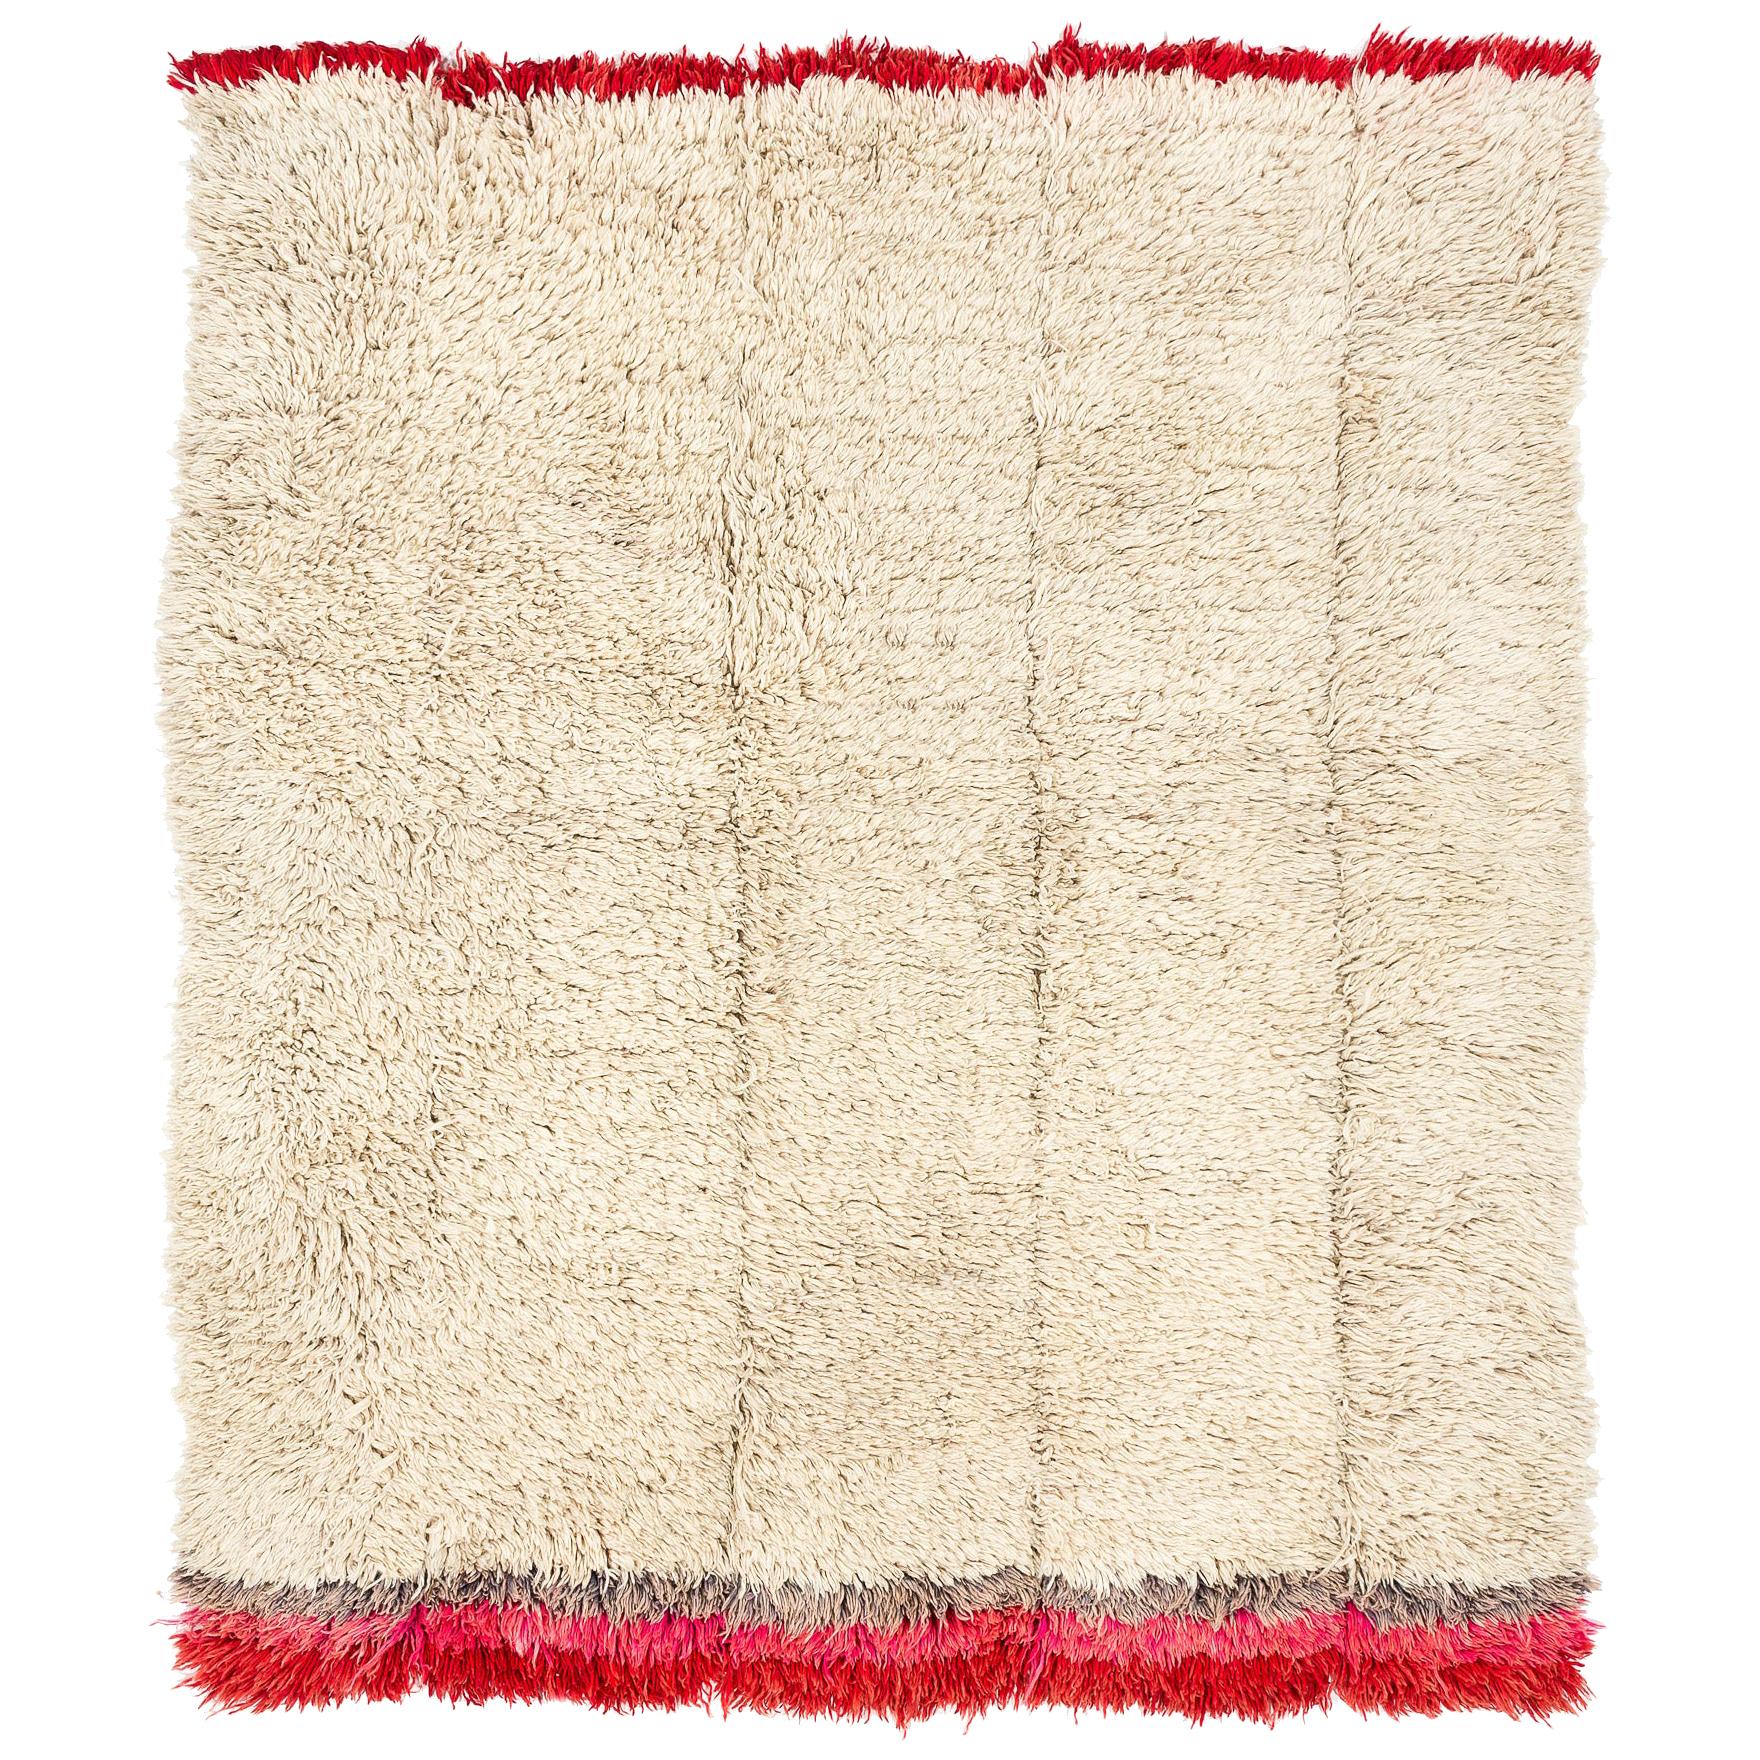  Vintage Tibetan Blanket/Rug For Sale